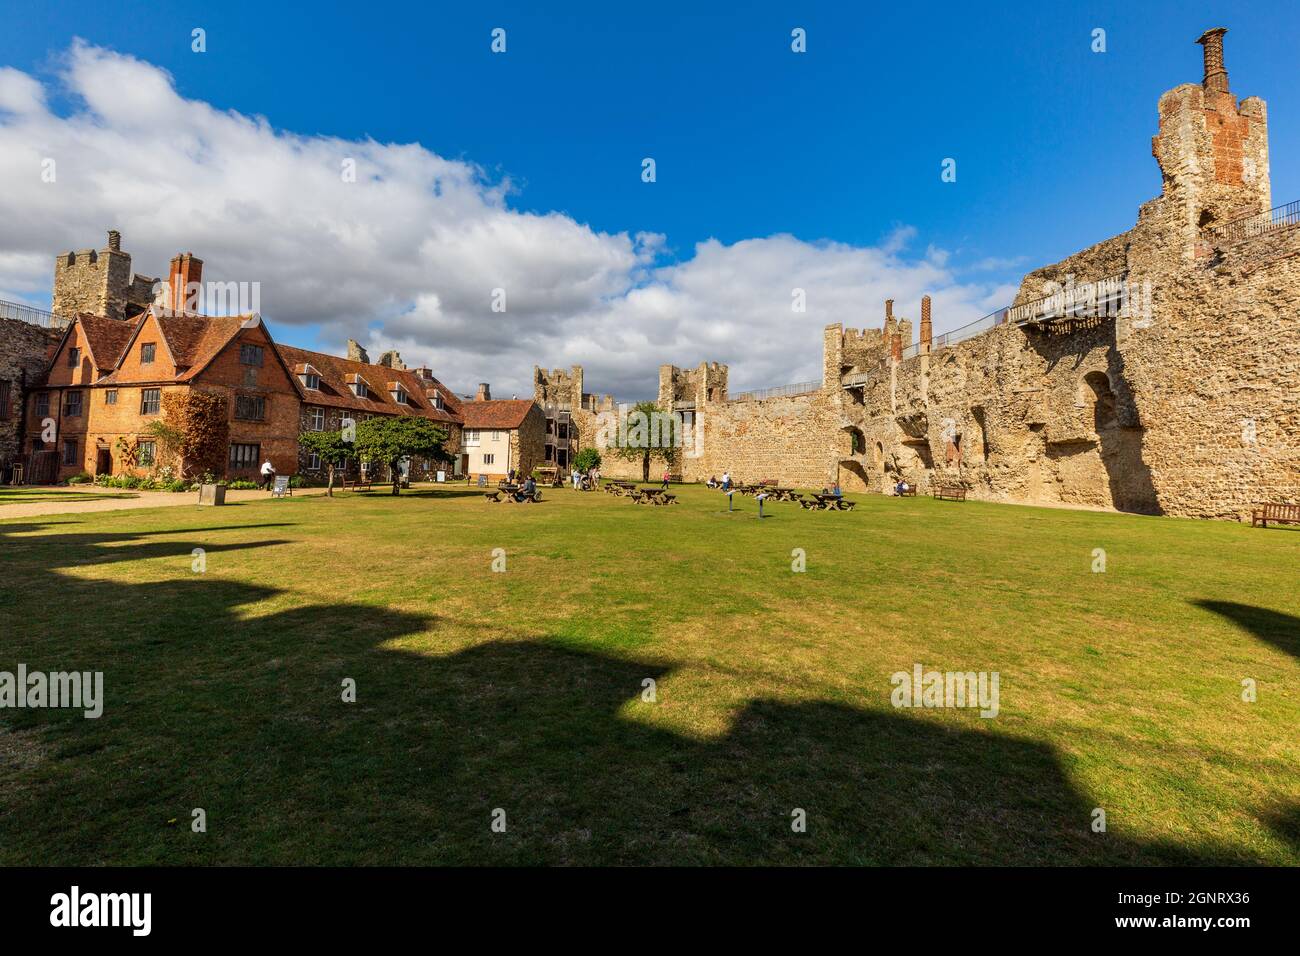 La cour intérieure du château de Framingham, Suffolk, Angleterre Banque D'Images